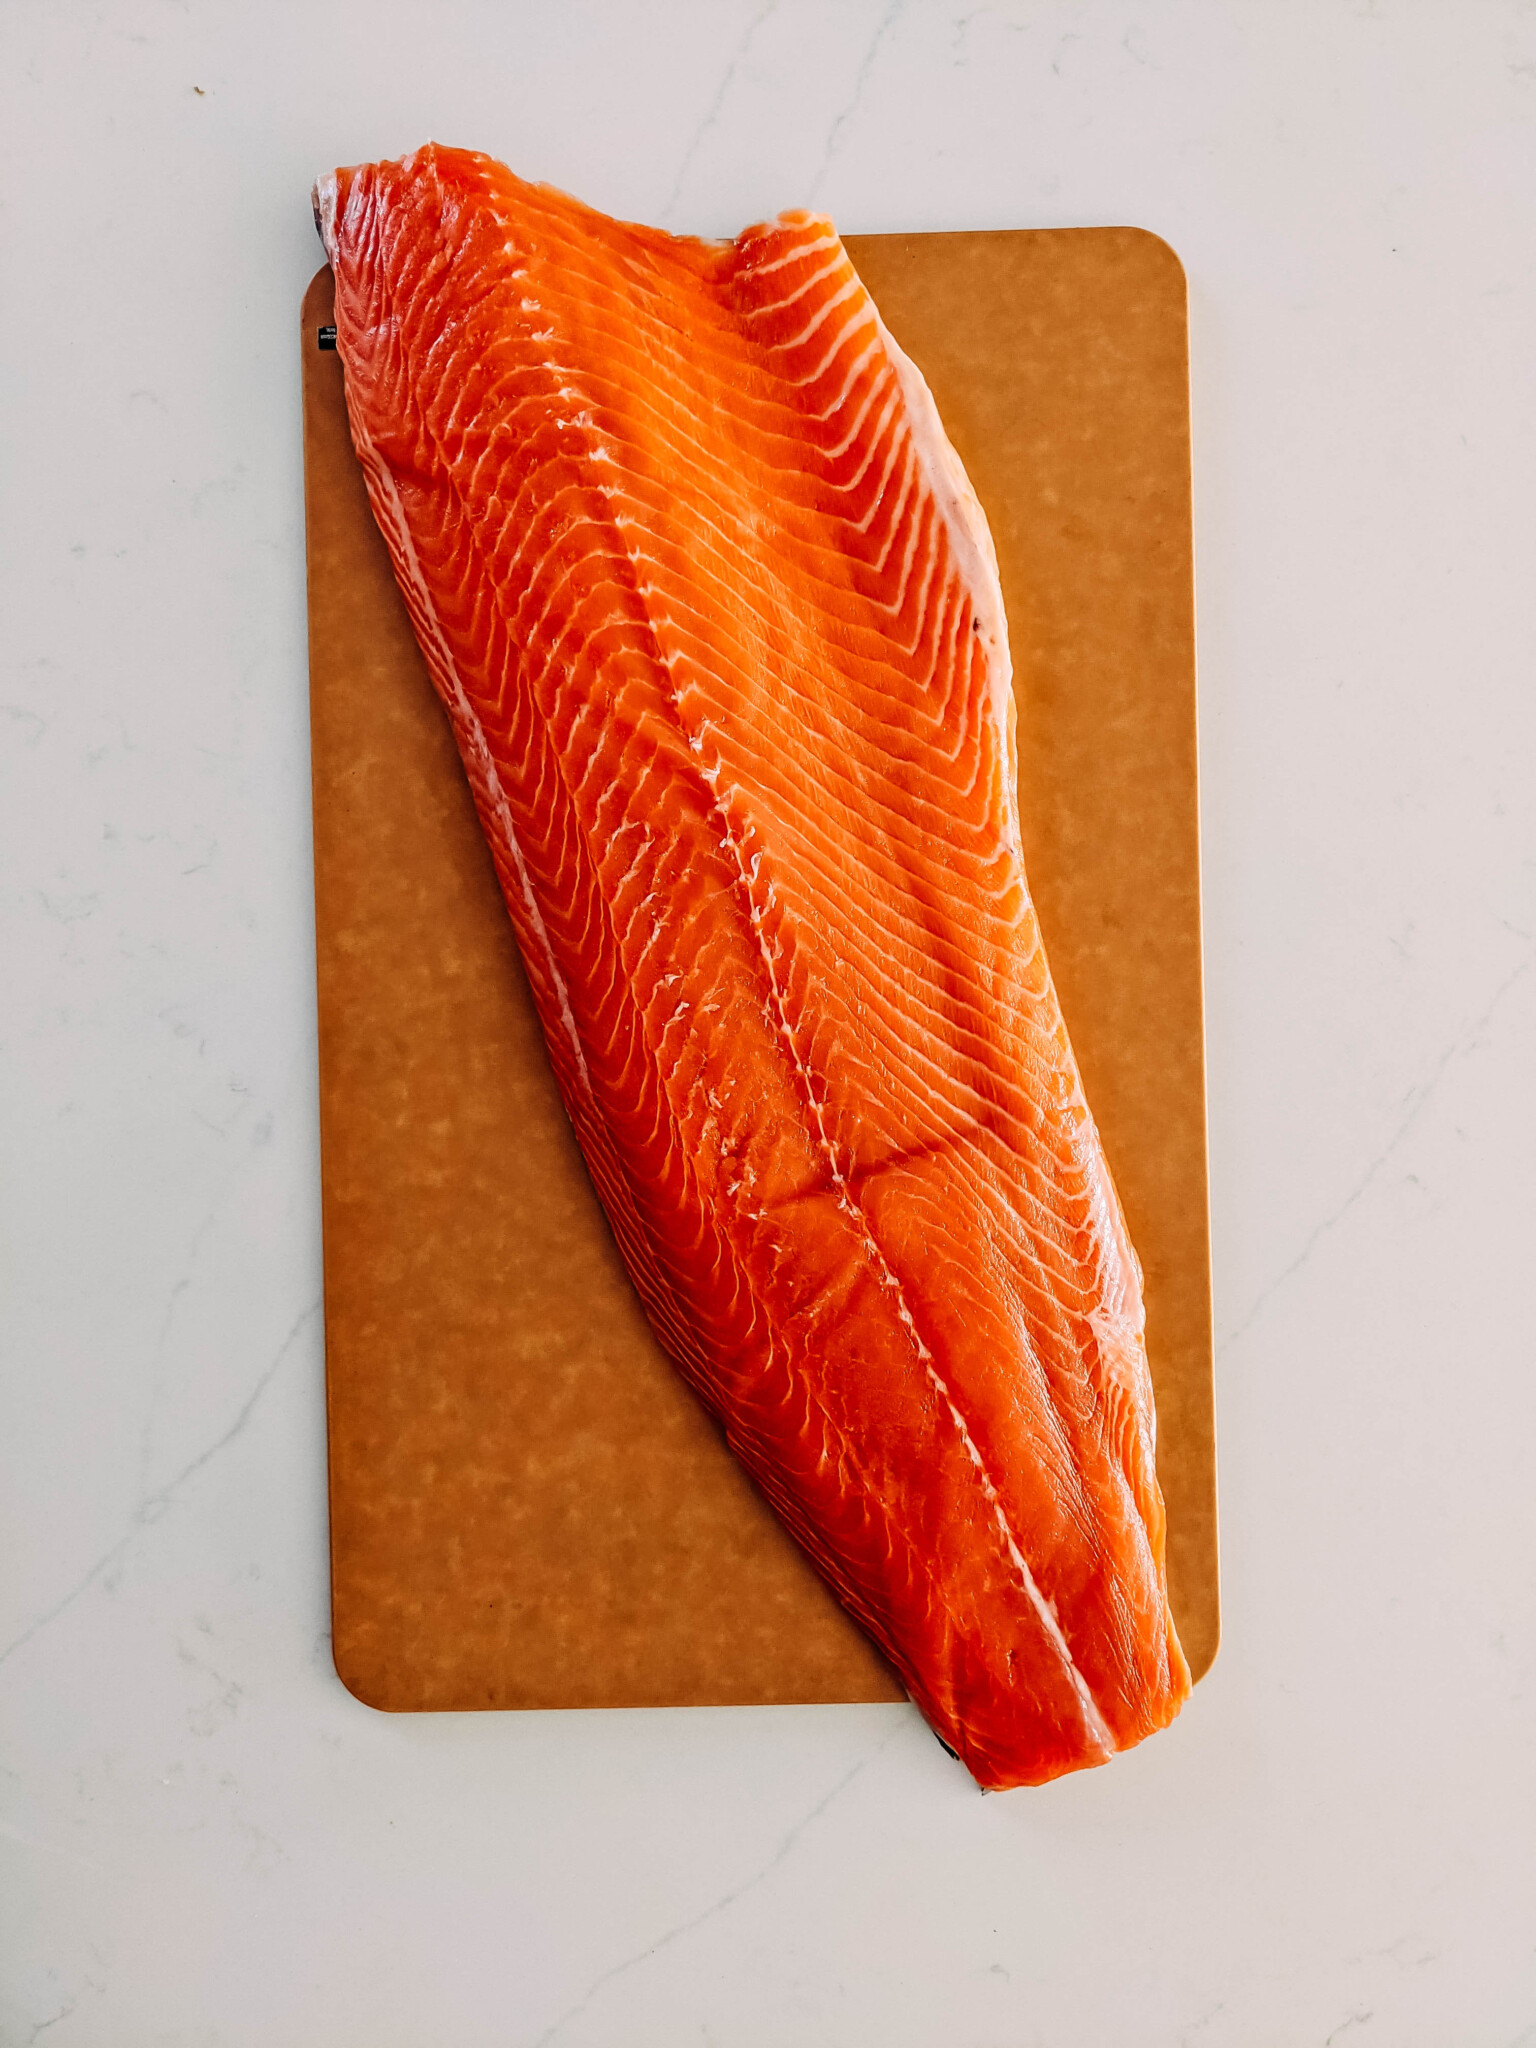 raw while salmon filet